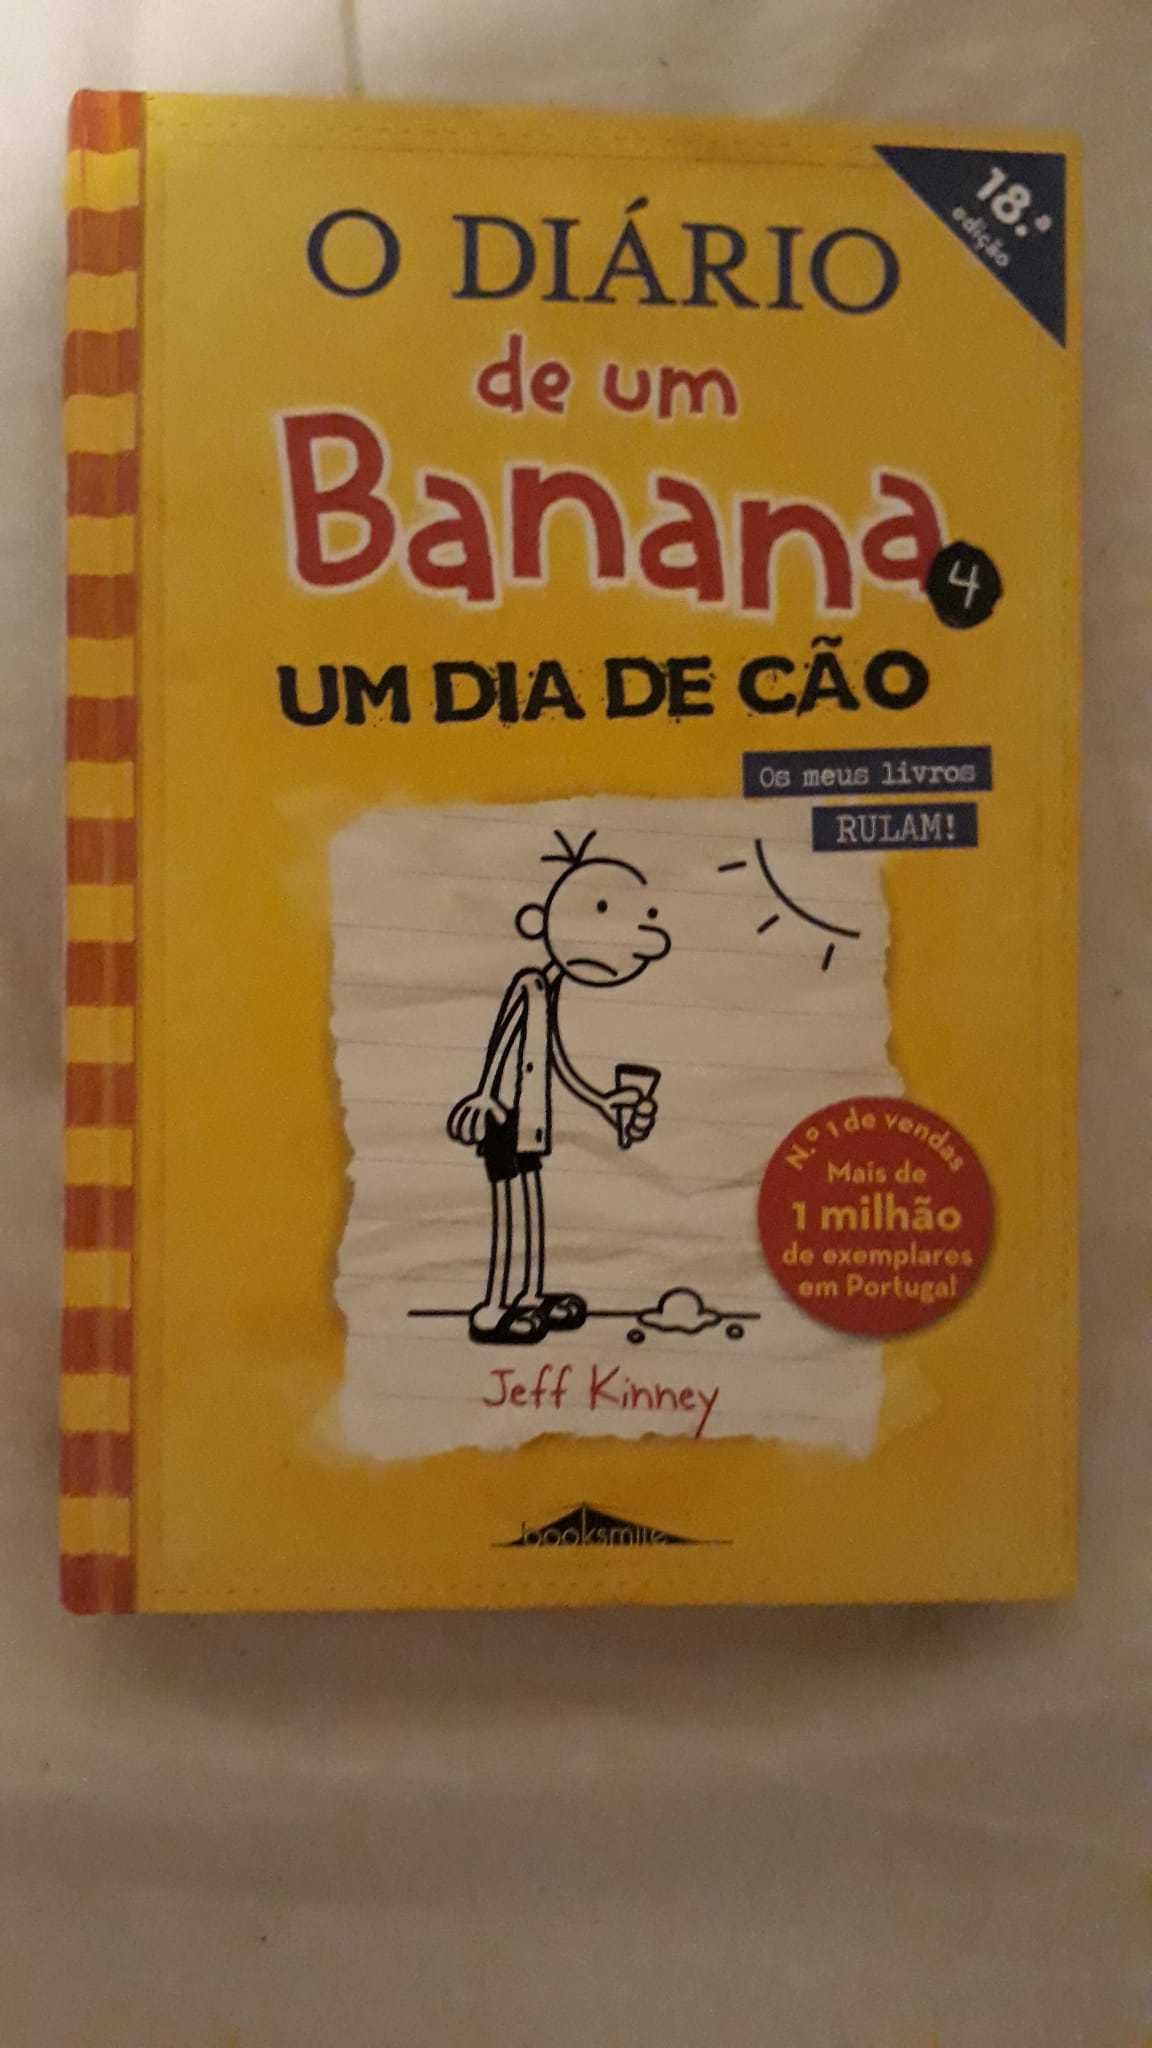 Livro "O diário de um Banana: Um dia de Cão" - Livro n°4